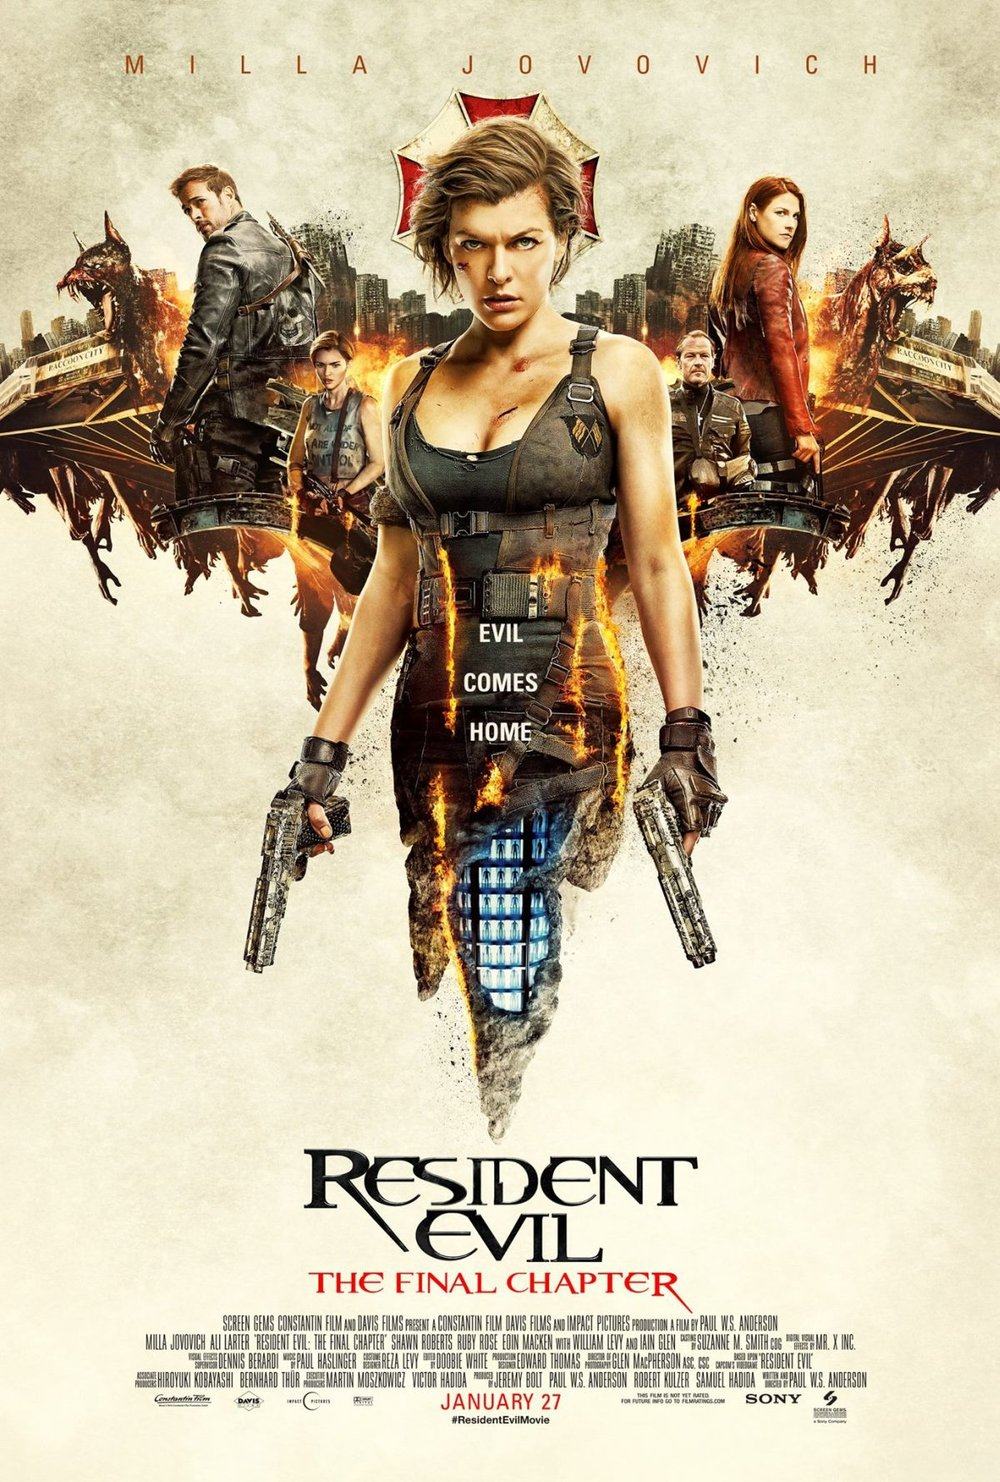 Franquia Resident Evil pode atingir a bilheteria de 1 bilhão de dólares